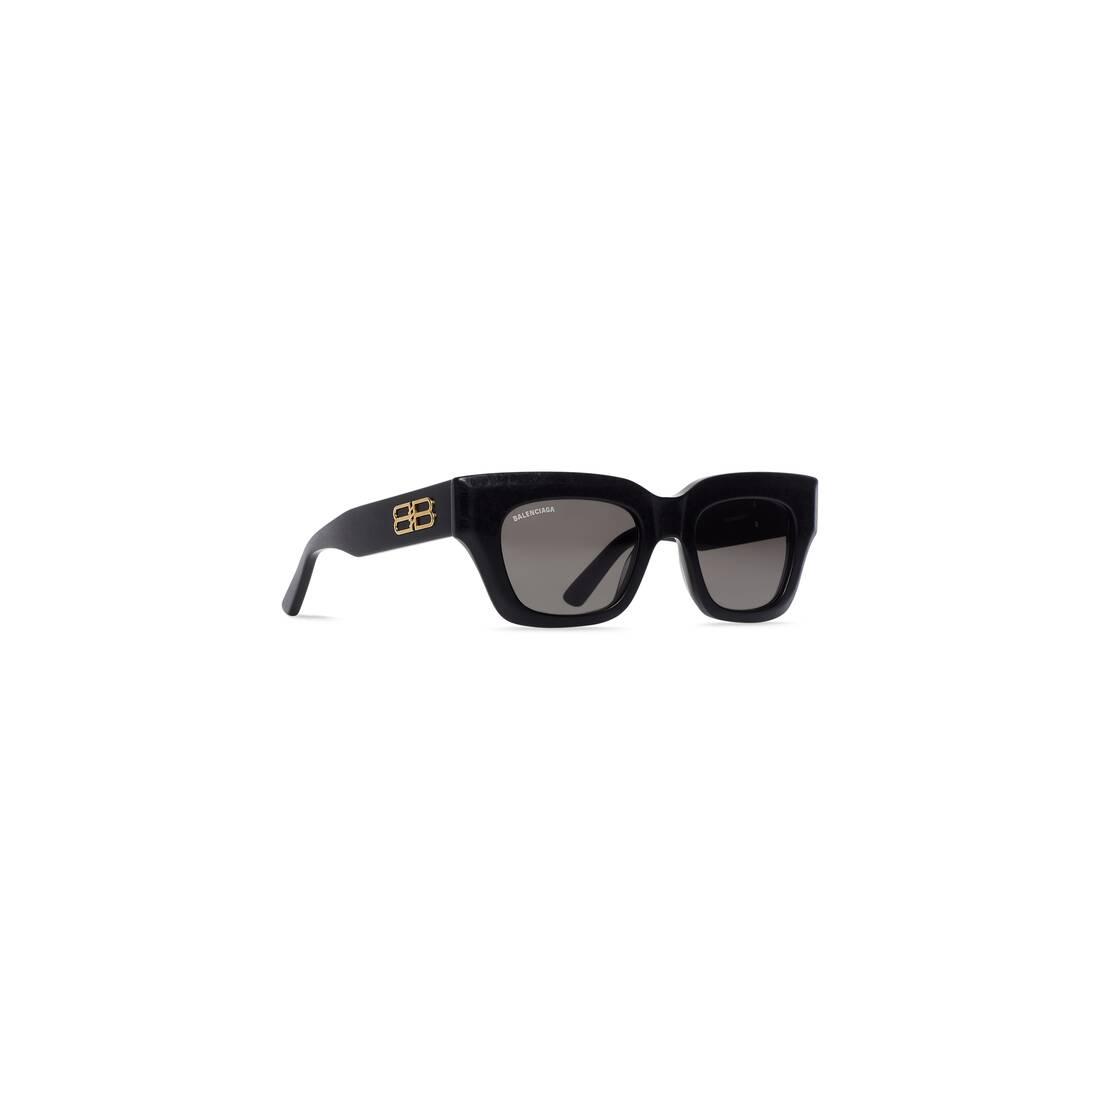 Balenciaga Rive Gauche D-frame Sunglasses in Black | Lyst